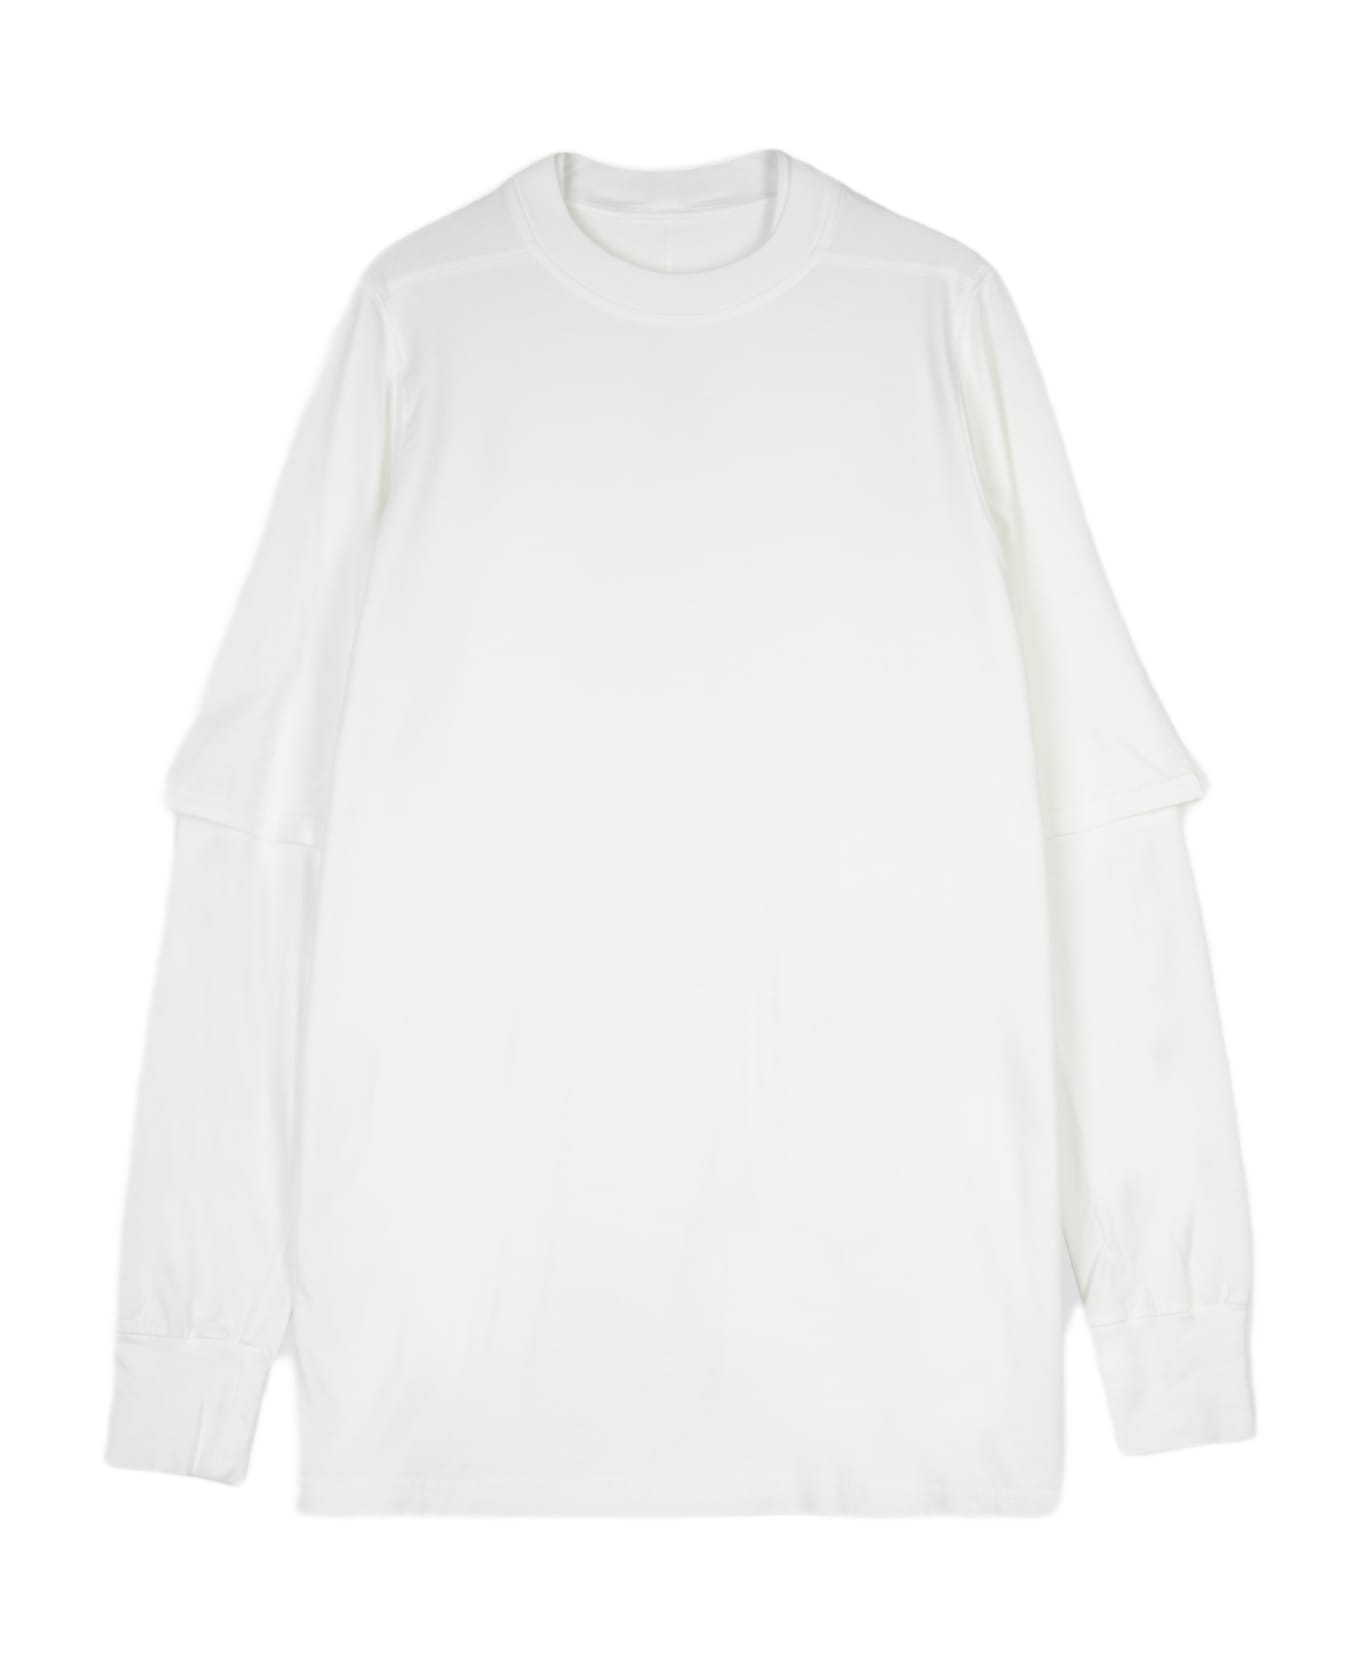 DRKSHDW Hustler T White Cotton Layered T-shirt With Long Sleeves - Hustler T - Latte